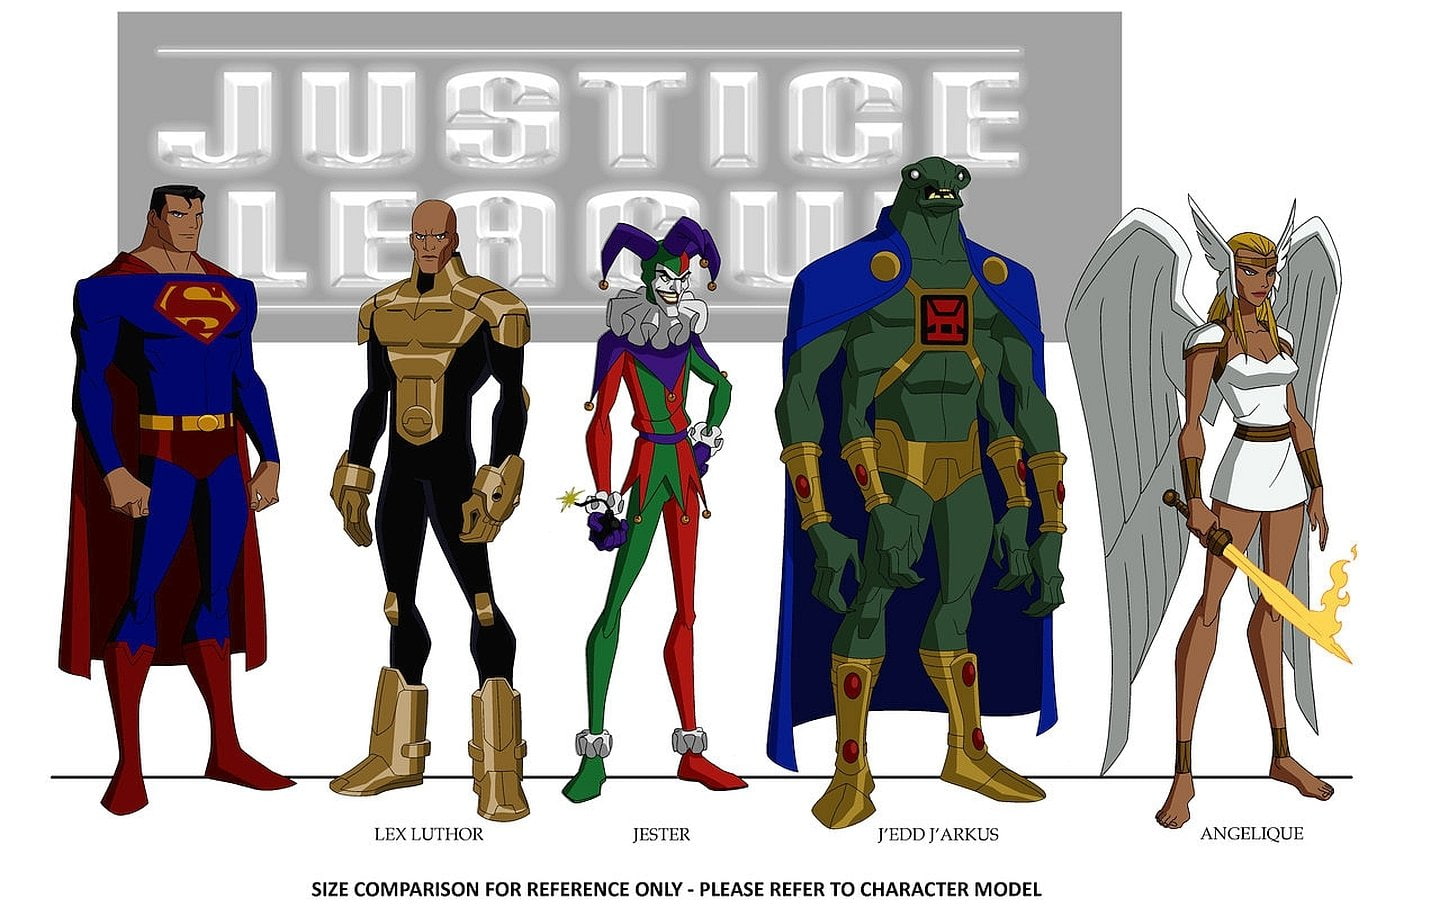 Comics, Justice League Of America, Angelique (DC Comics), J'edd J'arkus (DC Comics)